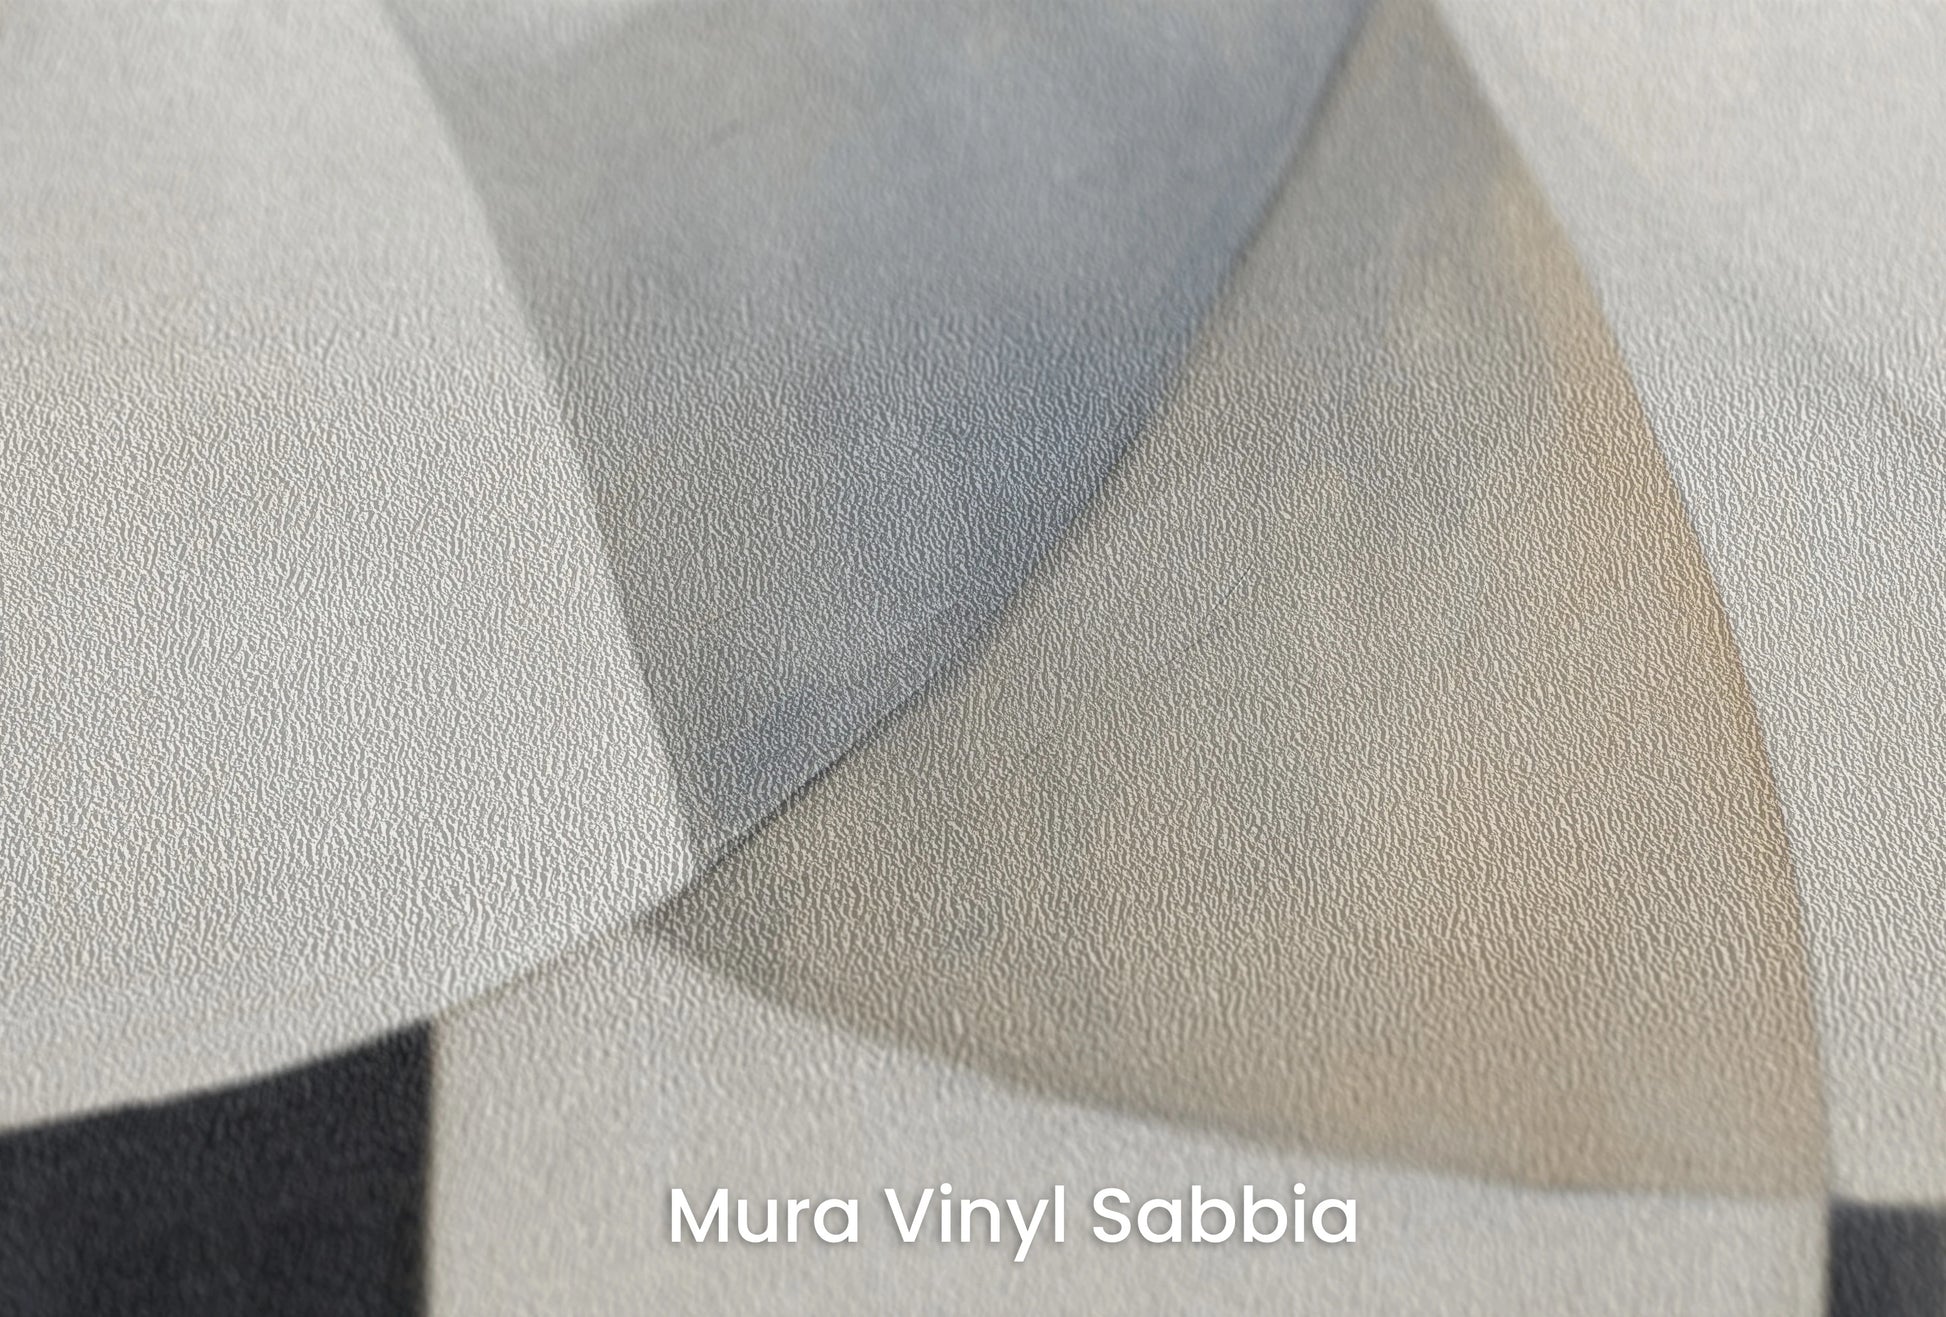 Zbliżenie na artystyczną fototapetę o nazwie Serenity Curves na podłożu Mura Vinyl Sabbia struktura grubego ziarna piasku.